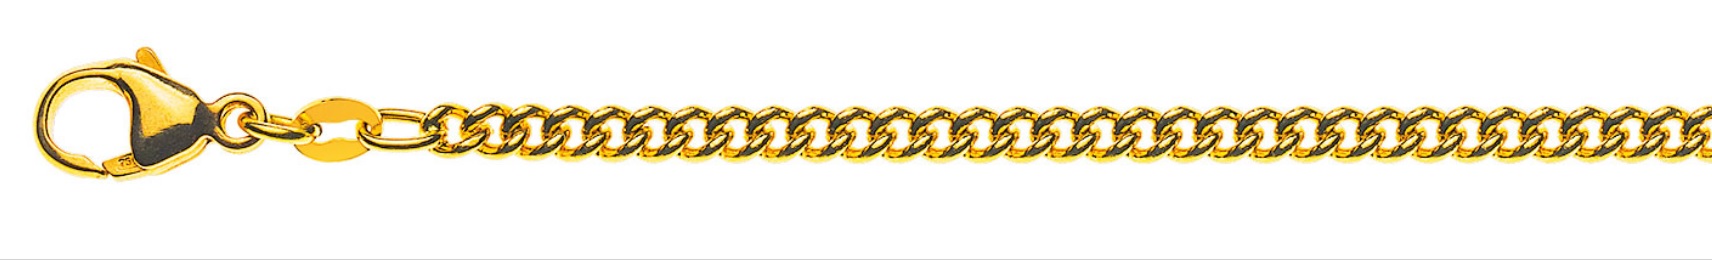 AURONOS Prestige Collier en or jaune 18 carats, chaîne blindée ronde 55cm 2.8mm